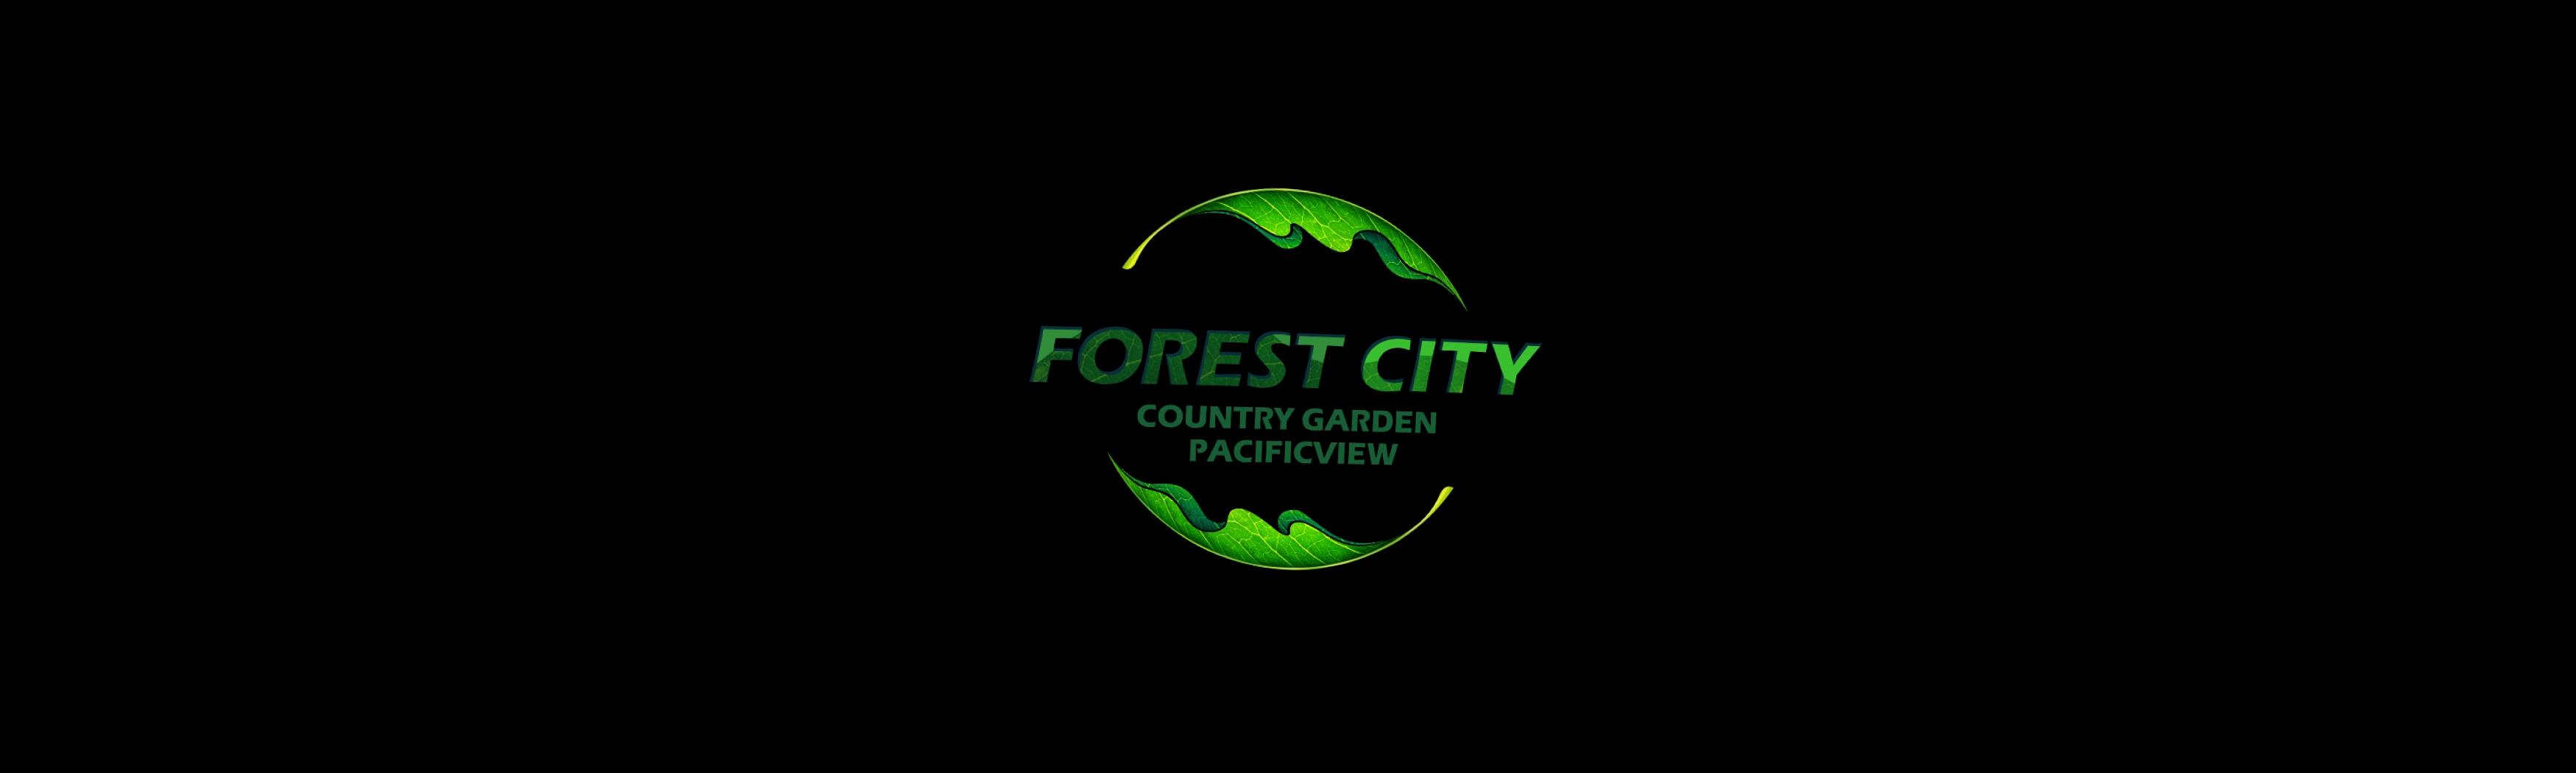 森林城市logo.JPG